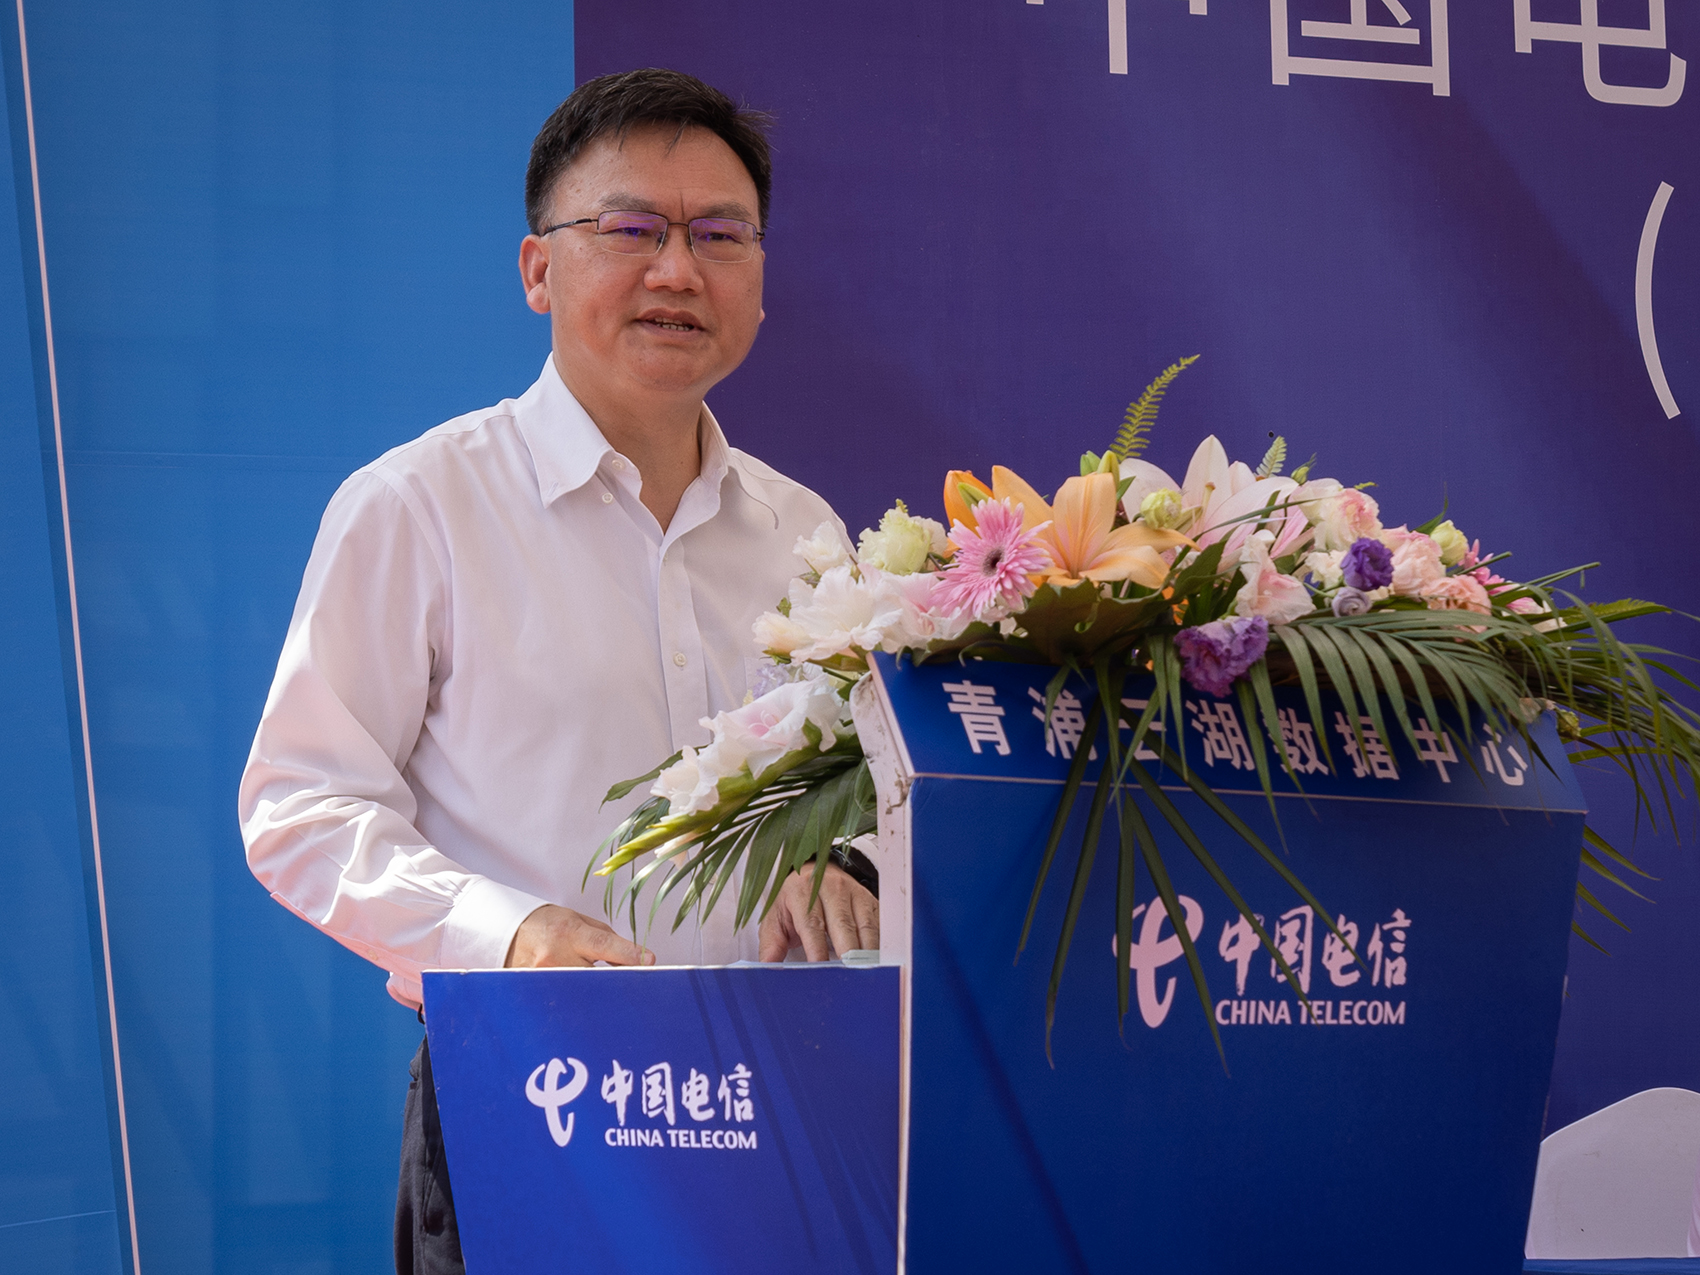 上海市经济和信息化委员会副主任汤文侃会上致辞。